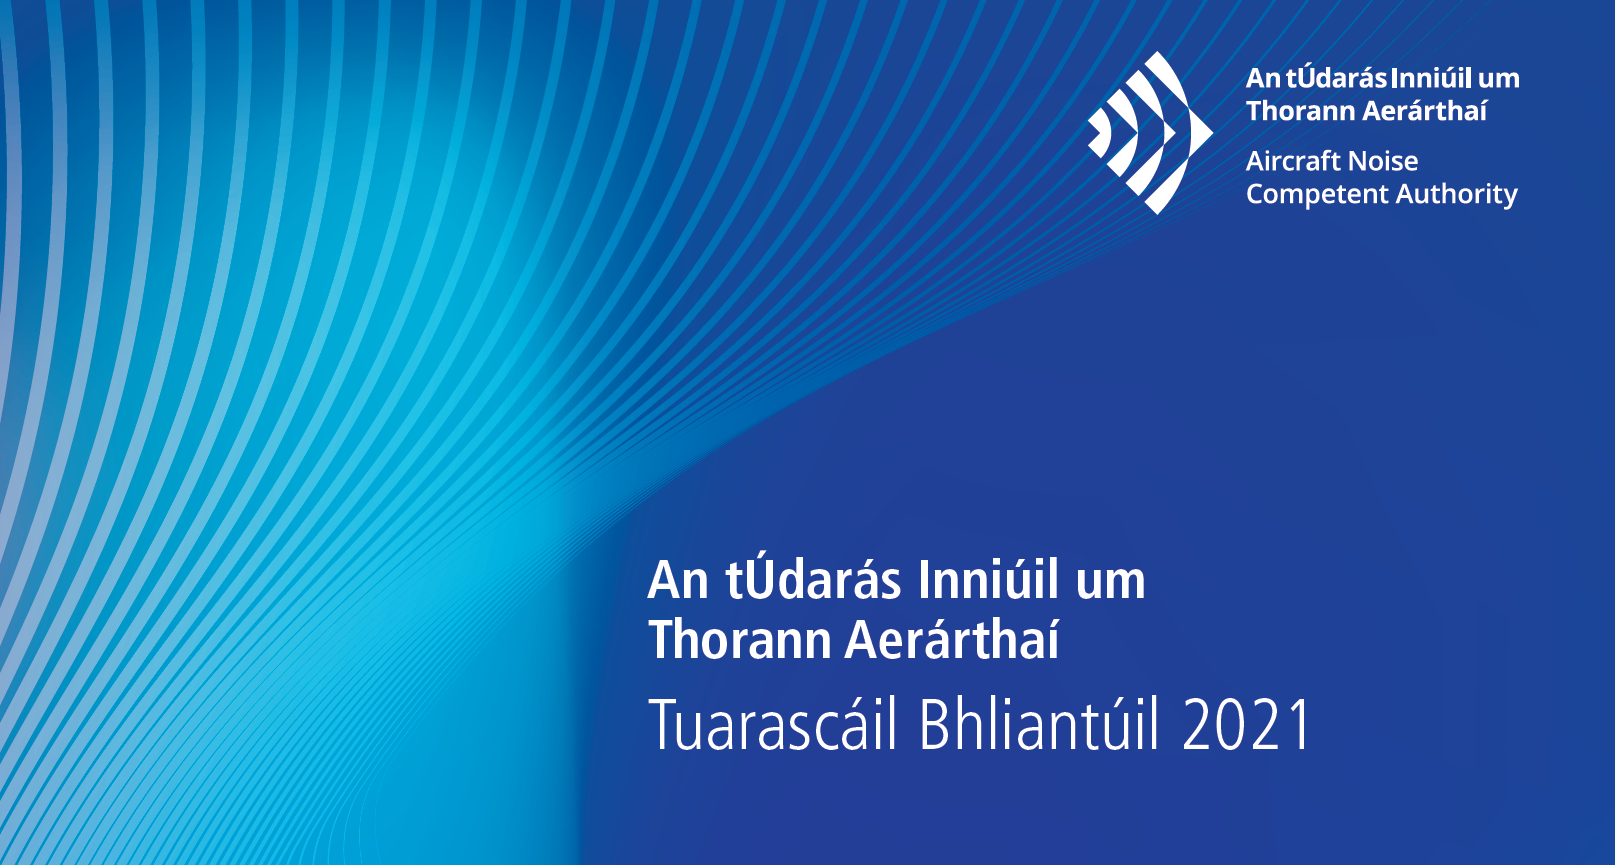 ANCA Tuaracáil Bhliantúil